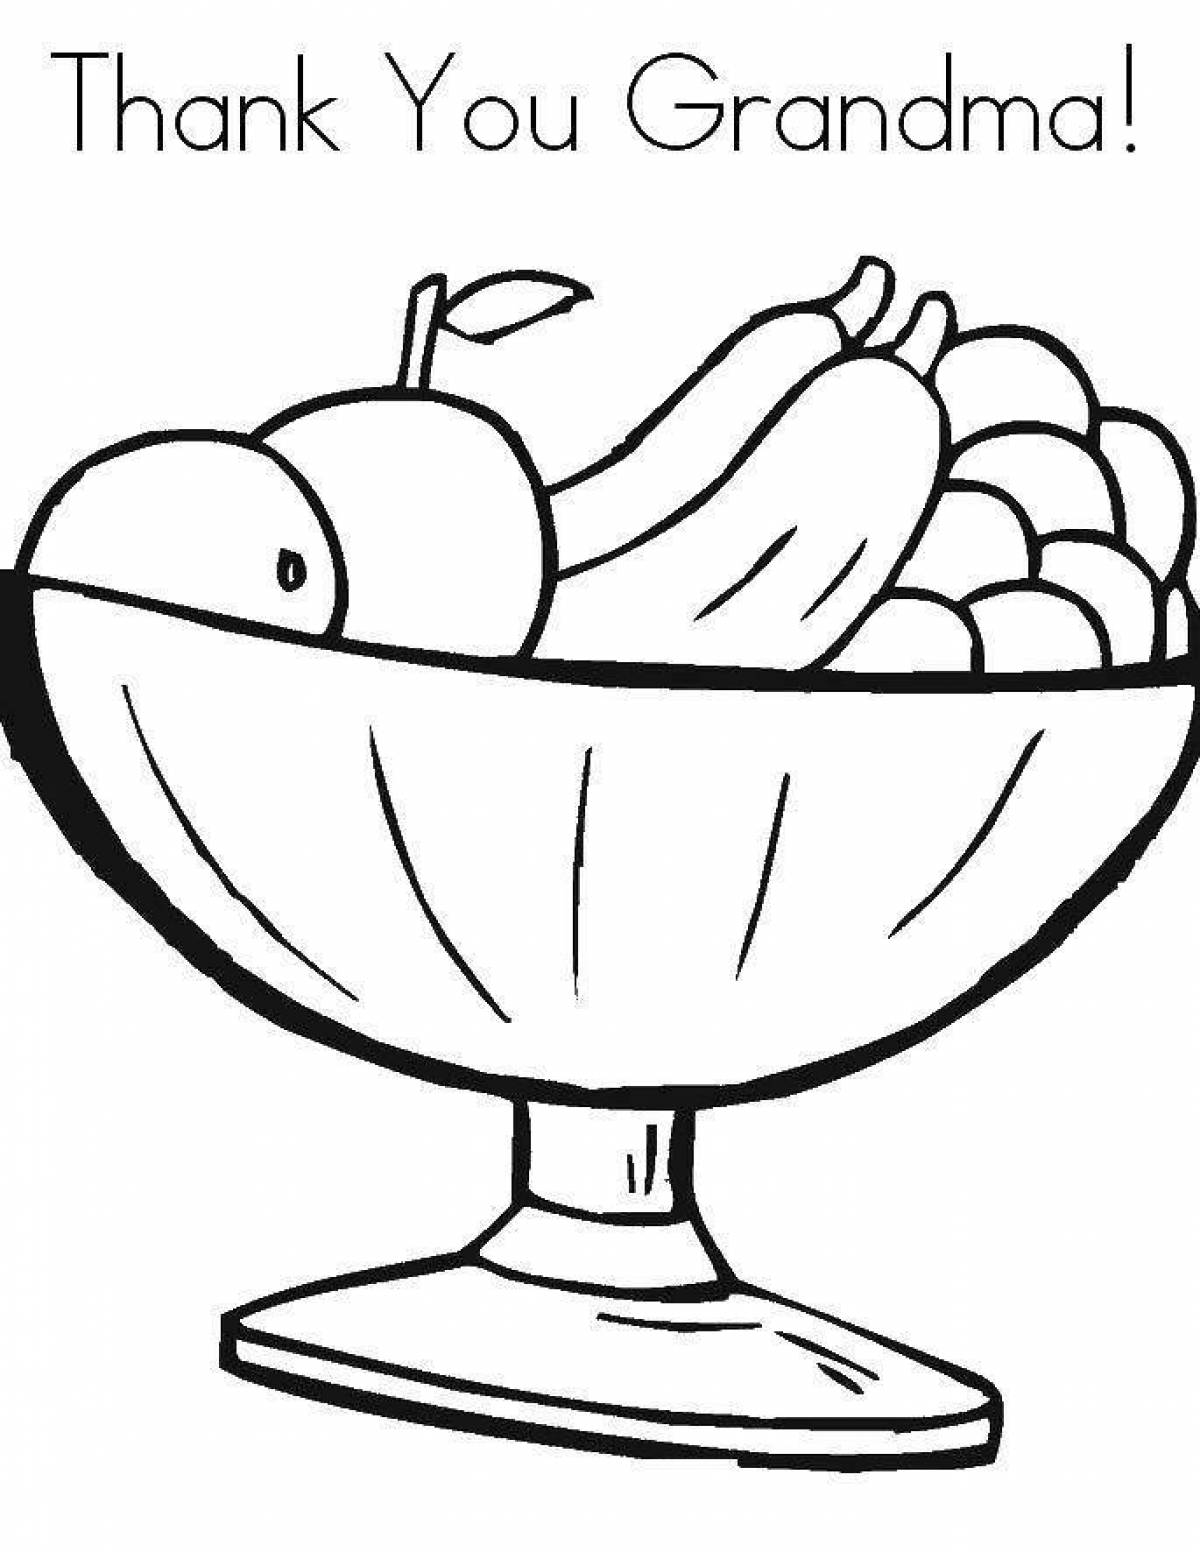 Nutritious fruit bowl